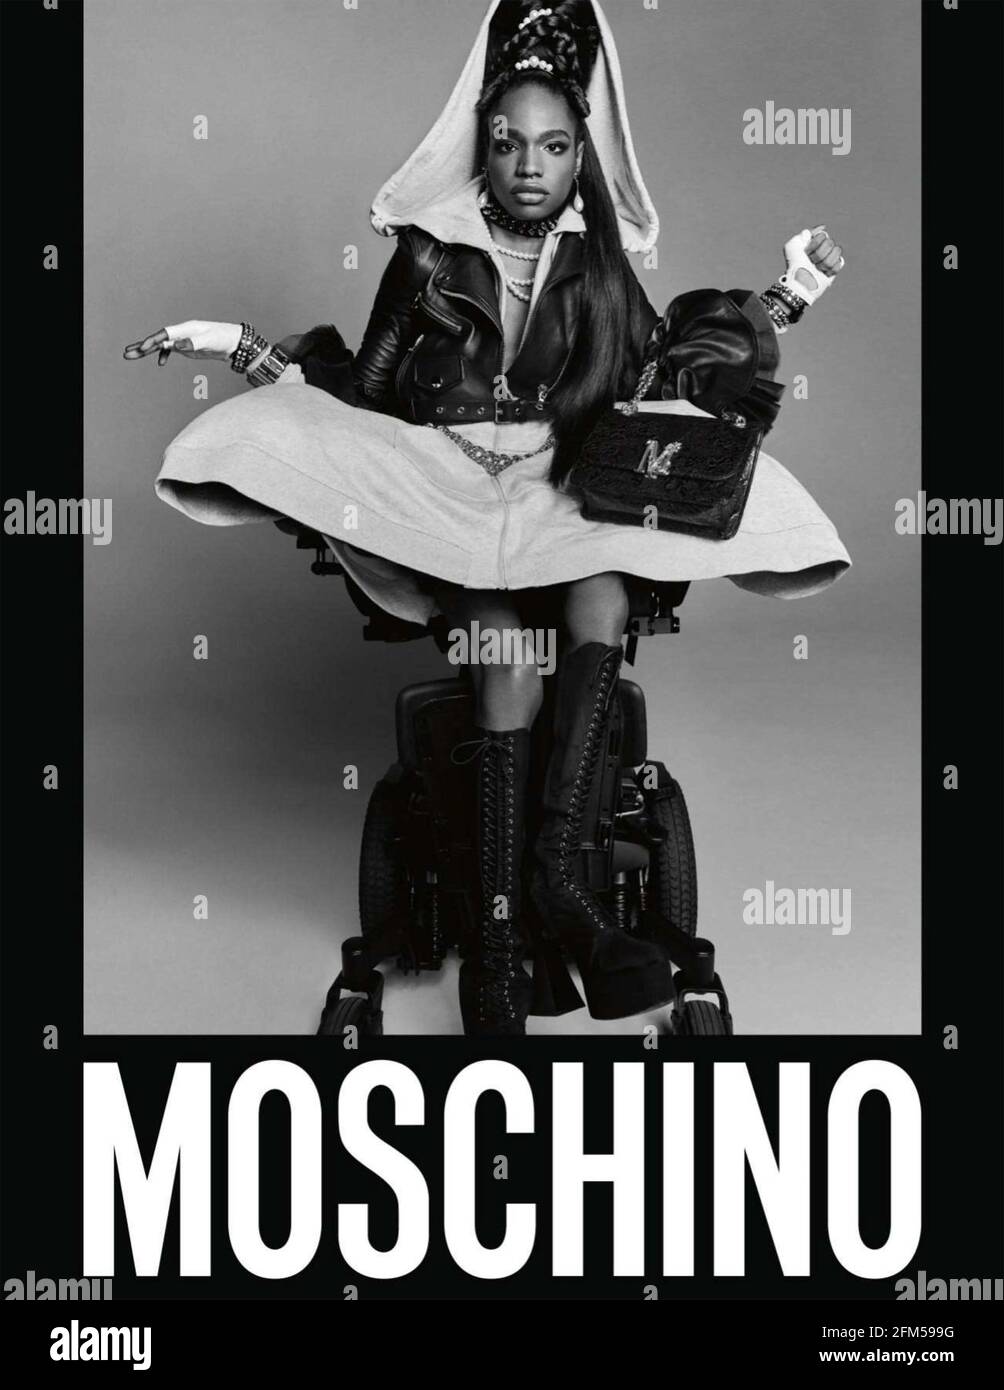 2020s UK Moschino Magazine Advert Stock Photo